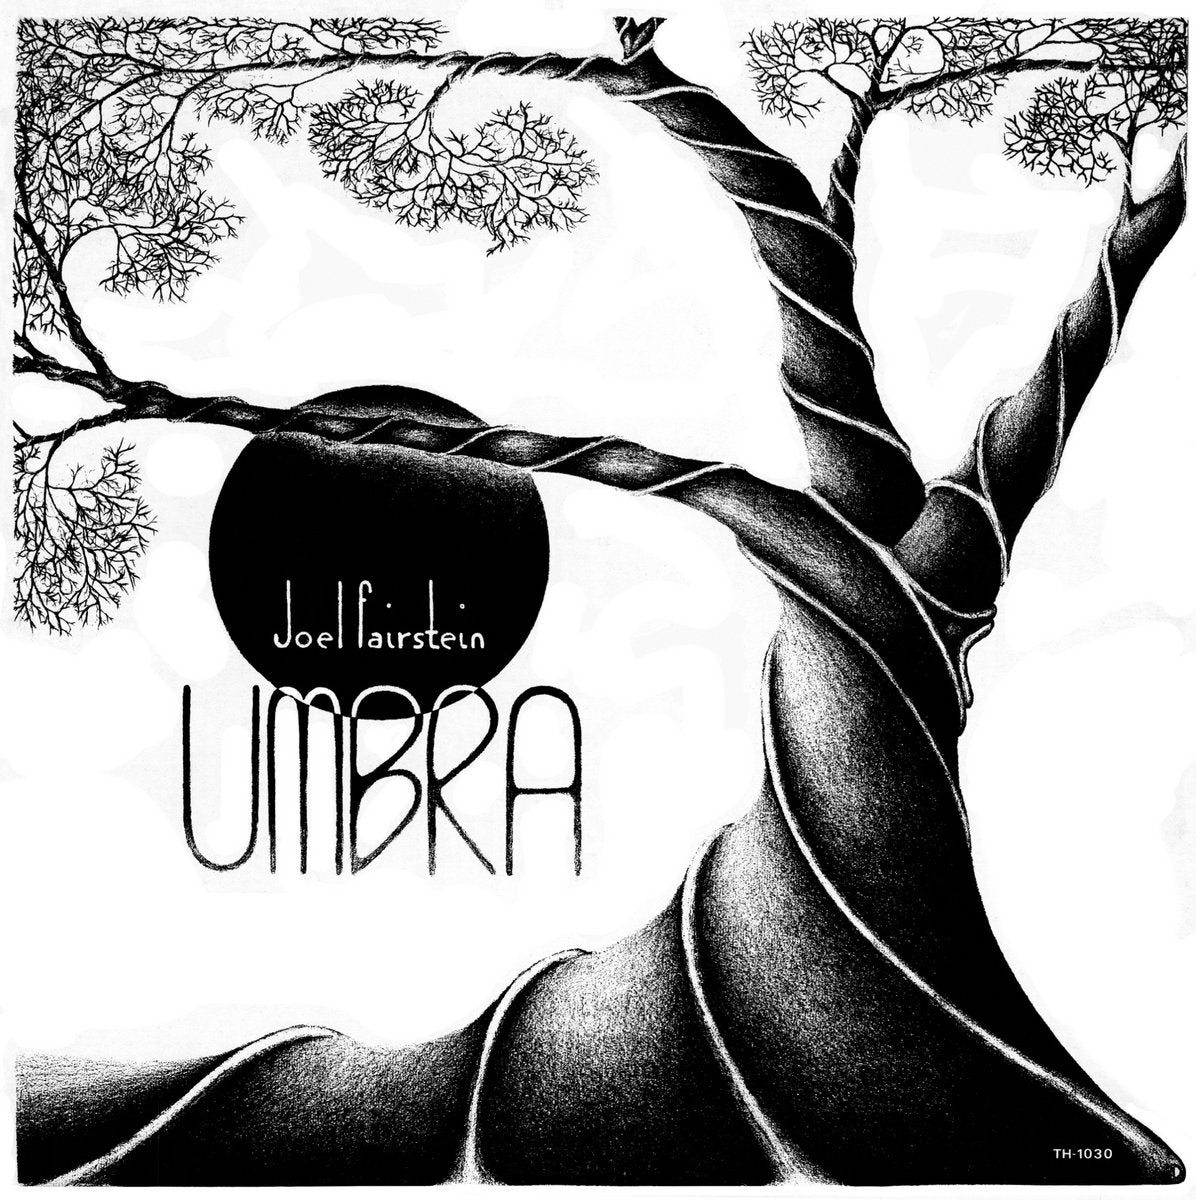 Umbra (New LP)